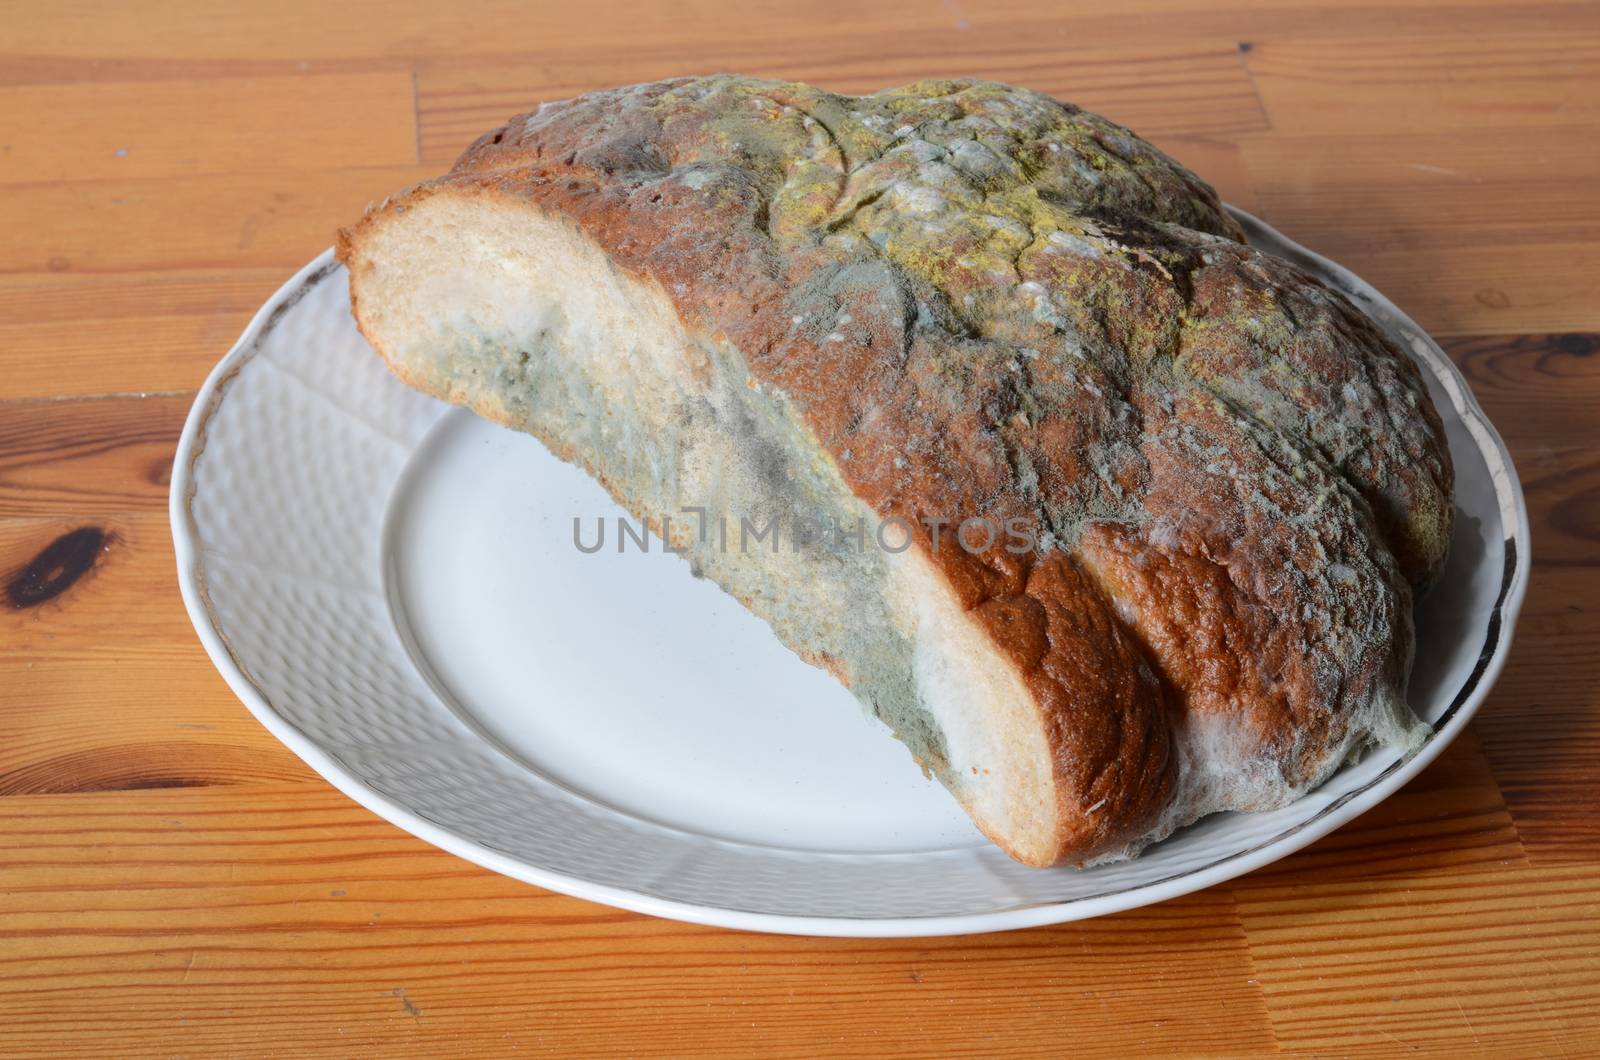 moldy bread by sarkao